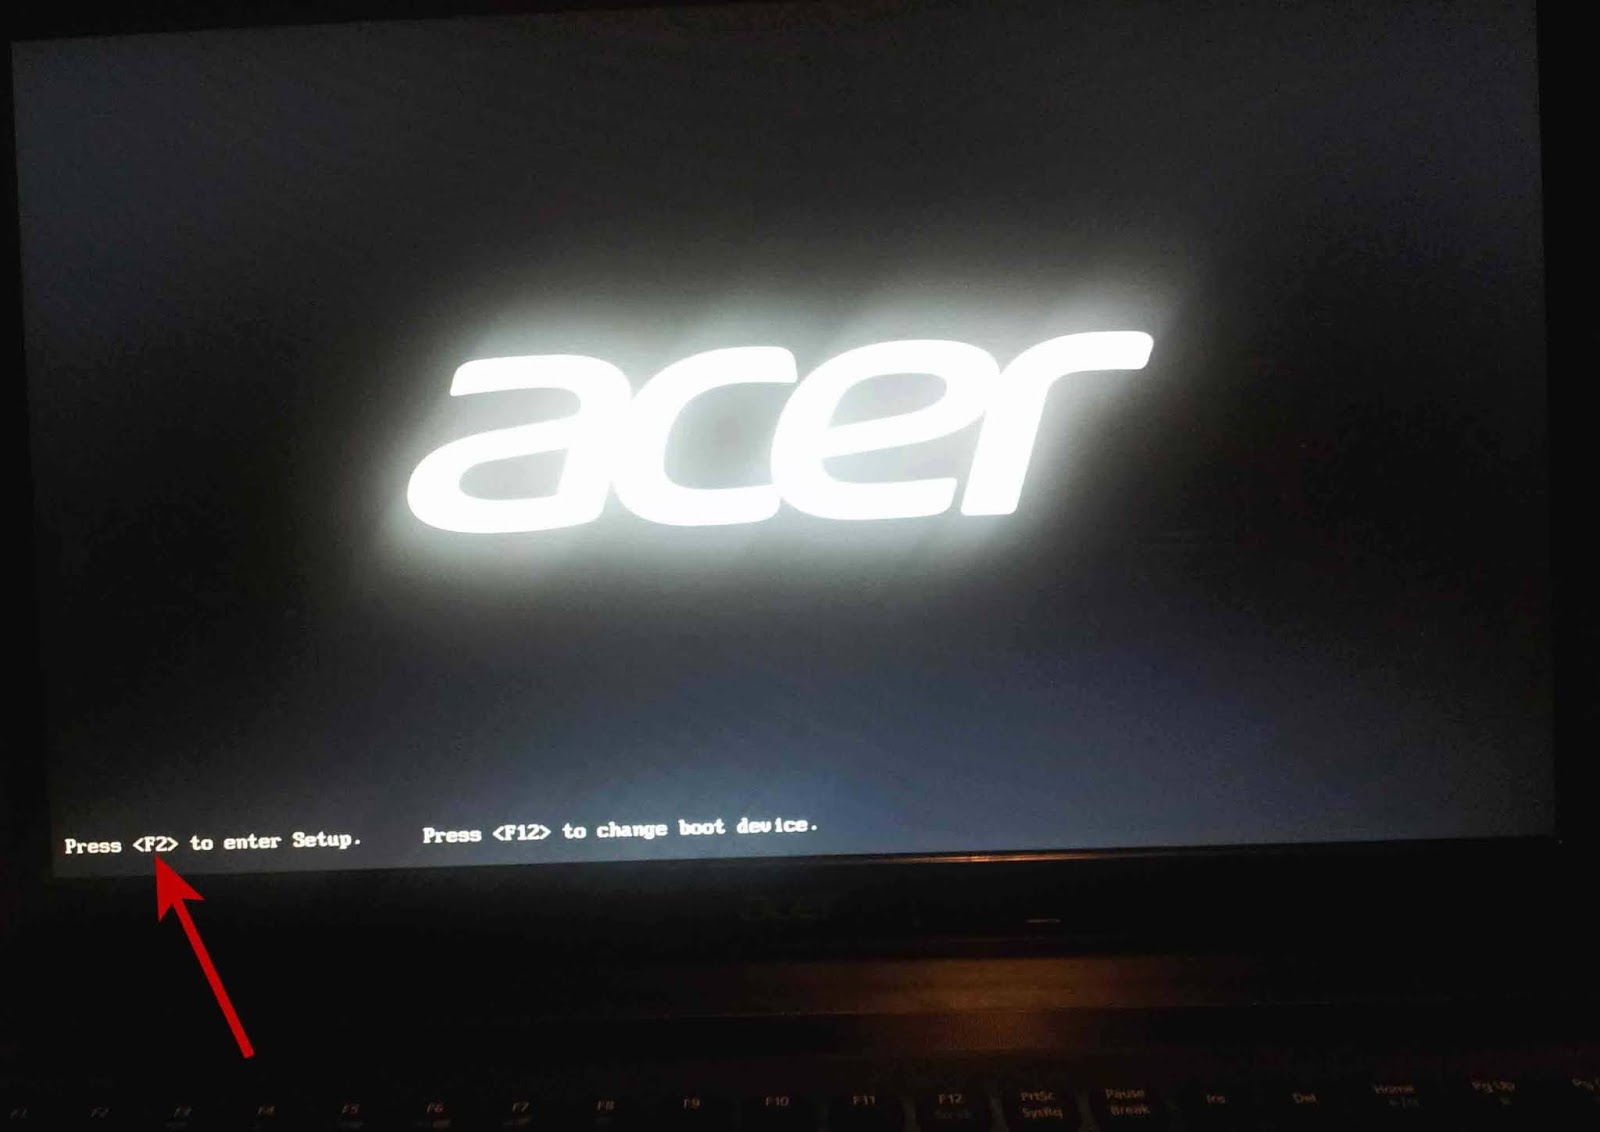 Enter f. Press f2 to enter Setup ноутбука Acer. Press f12. Press to enter Setup. Надпись на мониторе.